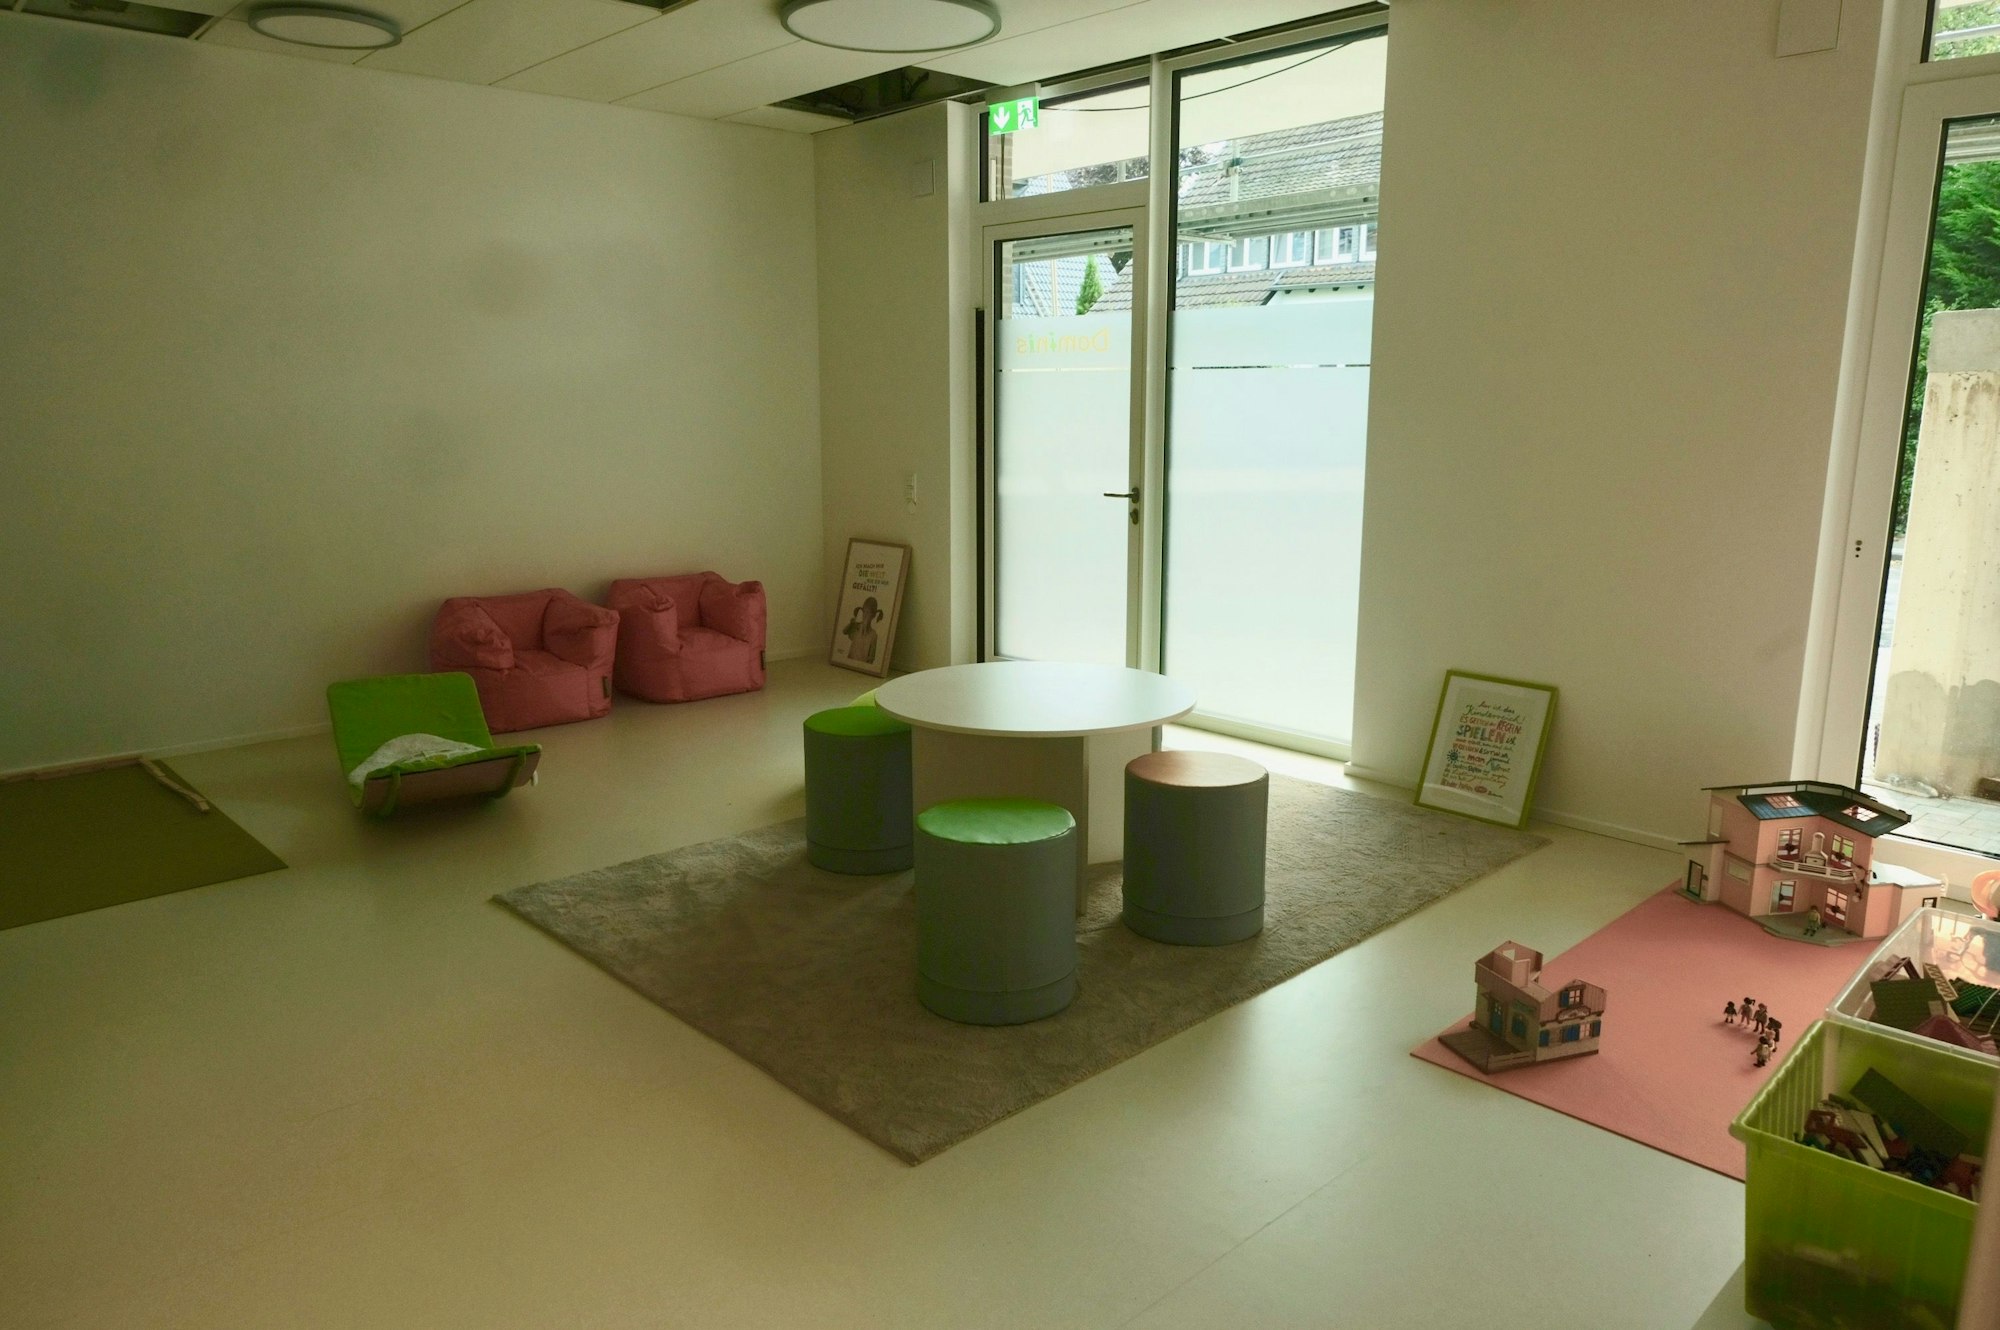 Ein großer heller Raum mit einer Spielecke und einer Sitzgruppe in den Farben grün und rosa ist zu sehen. Der Raum hat bodentiefe Fenster und eine Glastür.